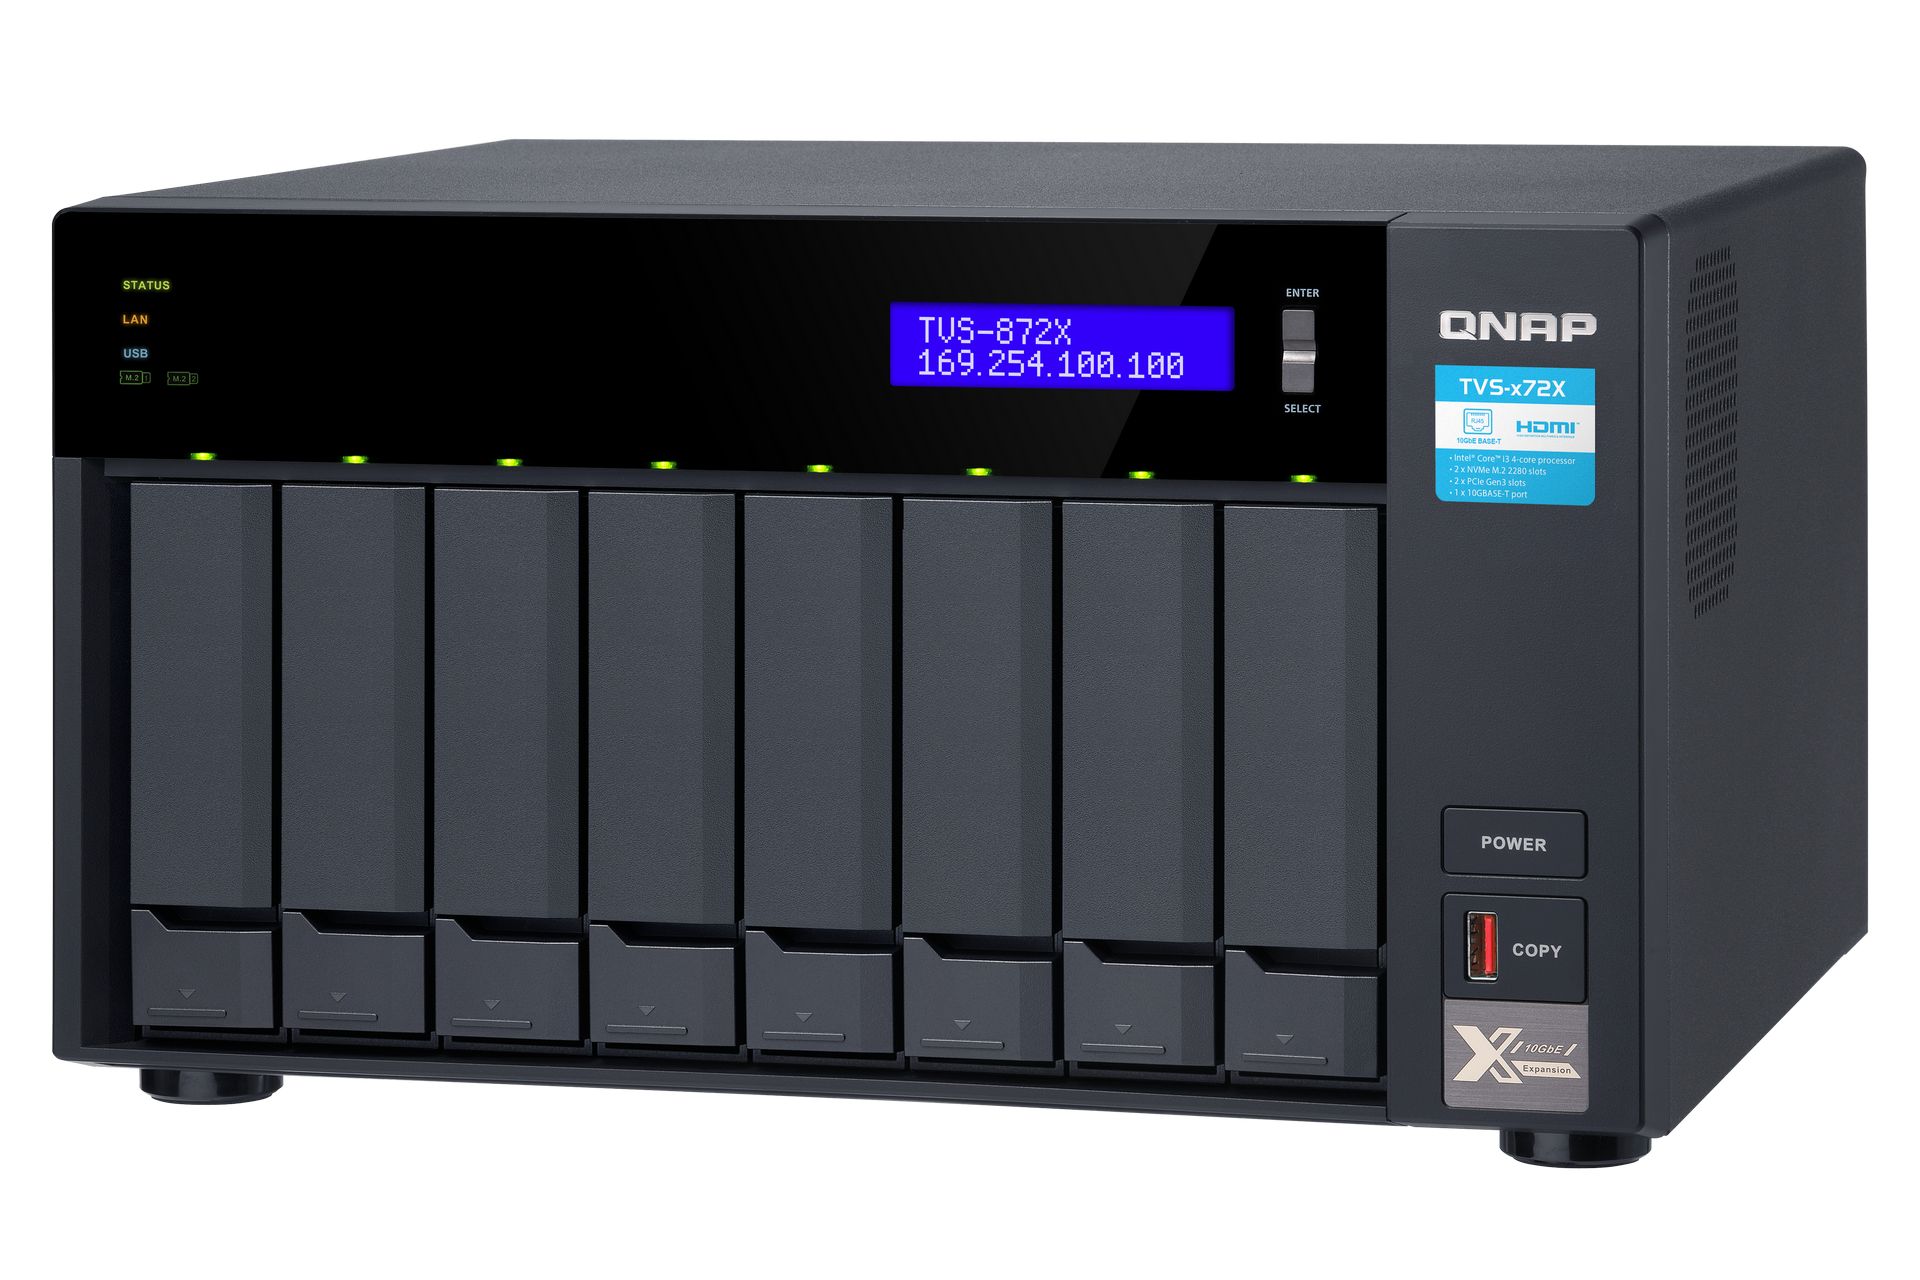 QNAP TVS-872X-i5-8G: Đây là một thiết bị máy chủ lưu trữ đa chức năng từ QNAP, hỗ trợ tới 8 ổ cứng và khả năng kết nối nhanh chóng với các thiết bị khác như máy tính, máy chủ và thiết bị di động. Với CPU i5 và bộ nhớ 8G, nó sẽ có hiệu suất tốt nhất để quản lý và sao lưu dữ liệu của bạn.